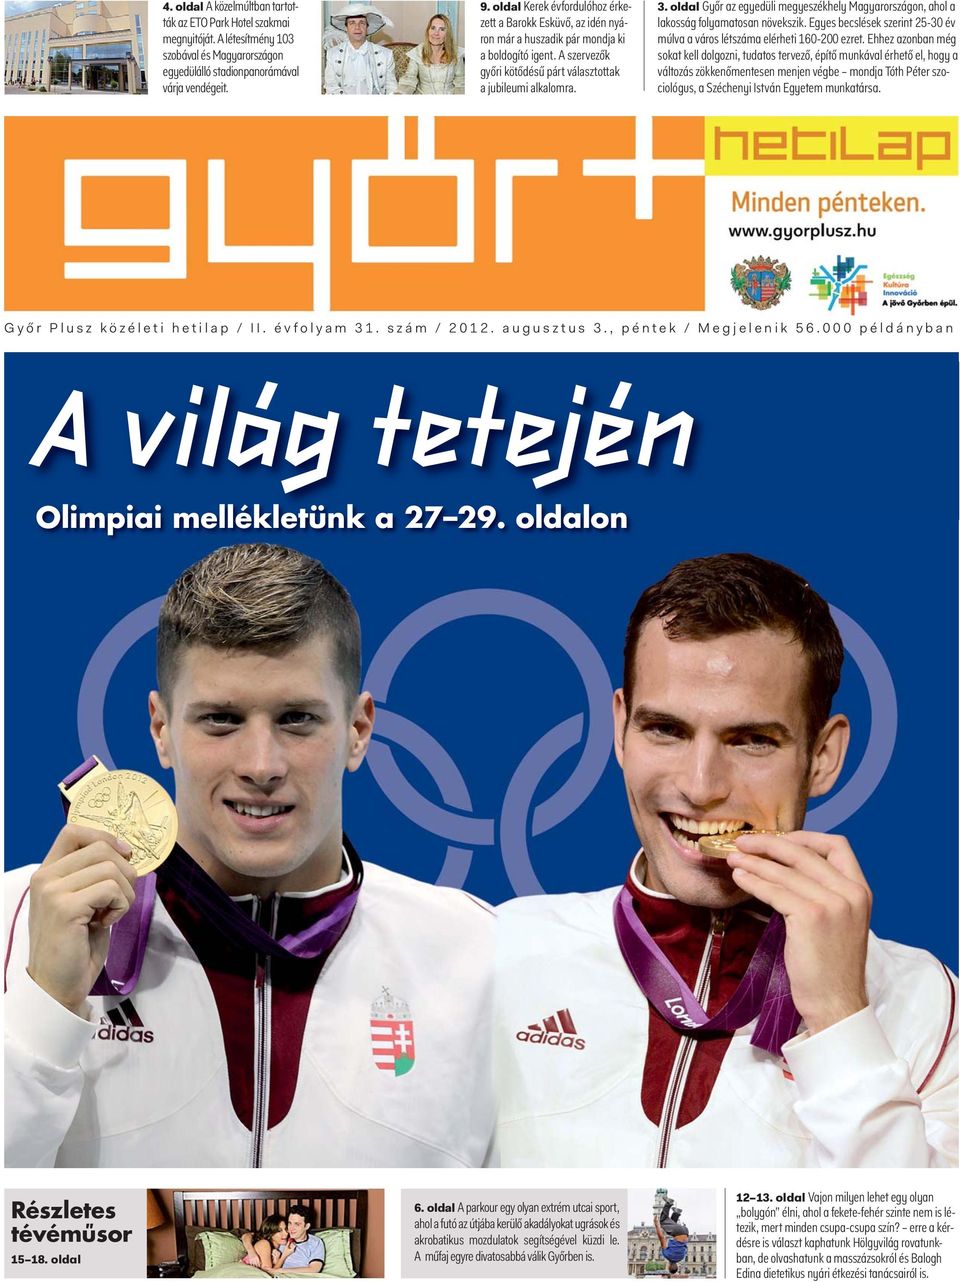 A vilag tetejen. Olimpiai mellékletünk a oldalon. Részletes tévéműsor - PDF  Free Download